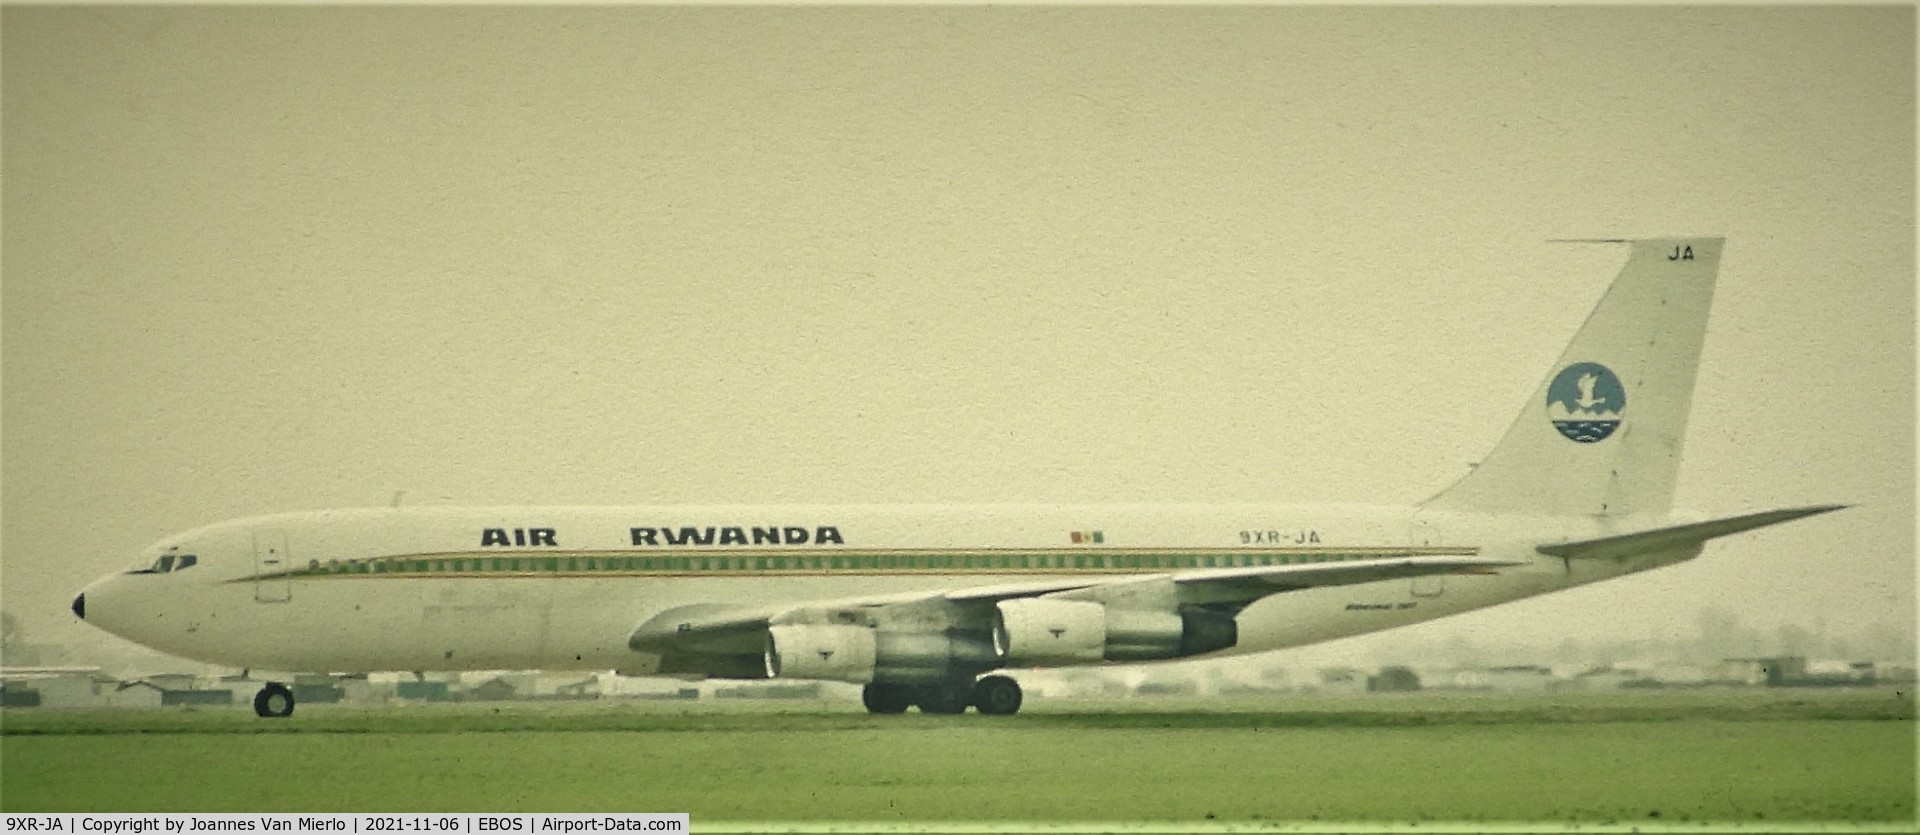 9XR-JA, 1967 Boeing 707-328C C/N 19292, Slide scan